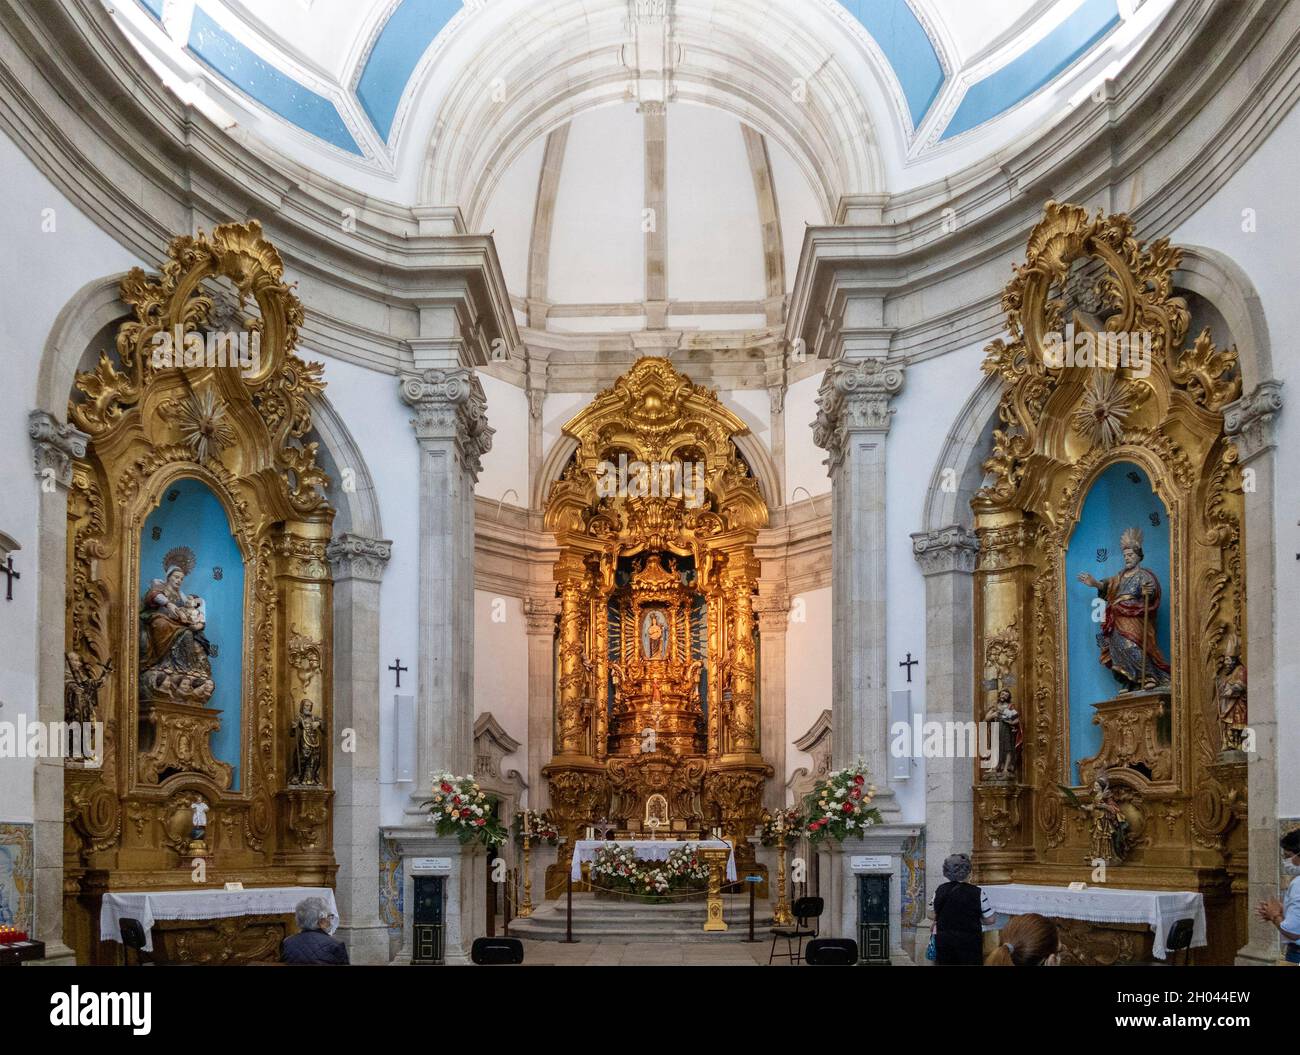 Gilded altars inside the Santuário de Nossa Senhora dos Remédios roman catholic church in Lamego, Portugal, Europe Stock Photo